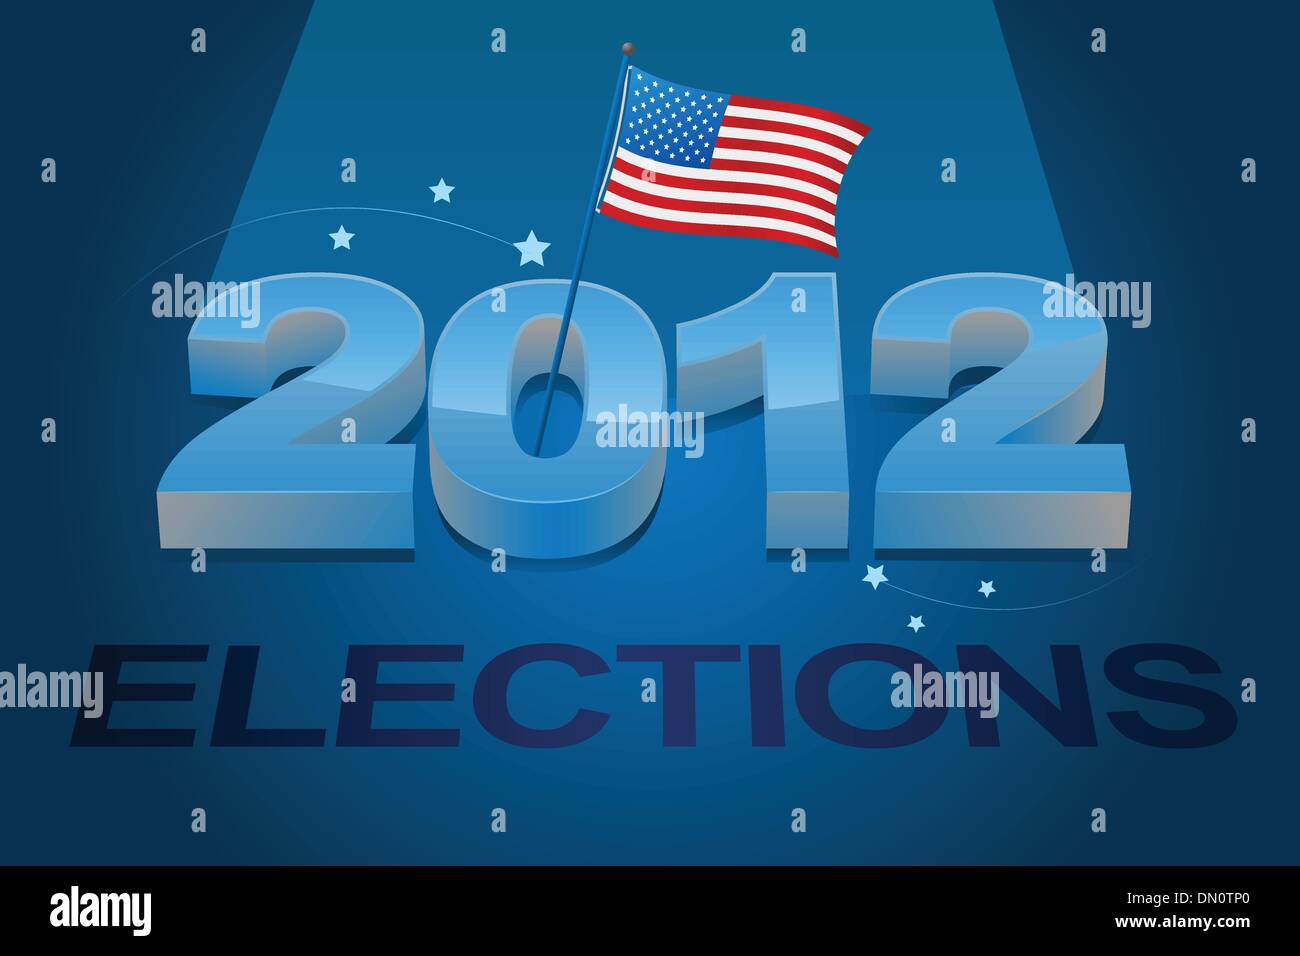 dargestellte Bild der amerikanischen Flagge und Wahl 2012 Stock Vektor